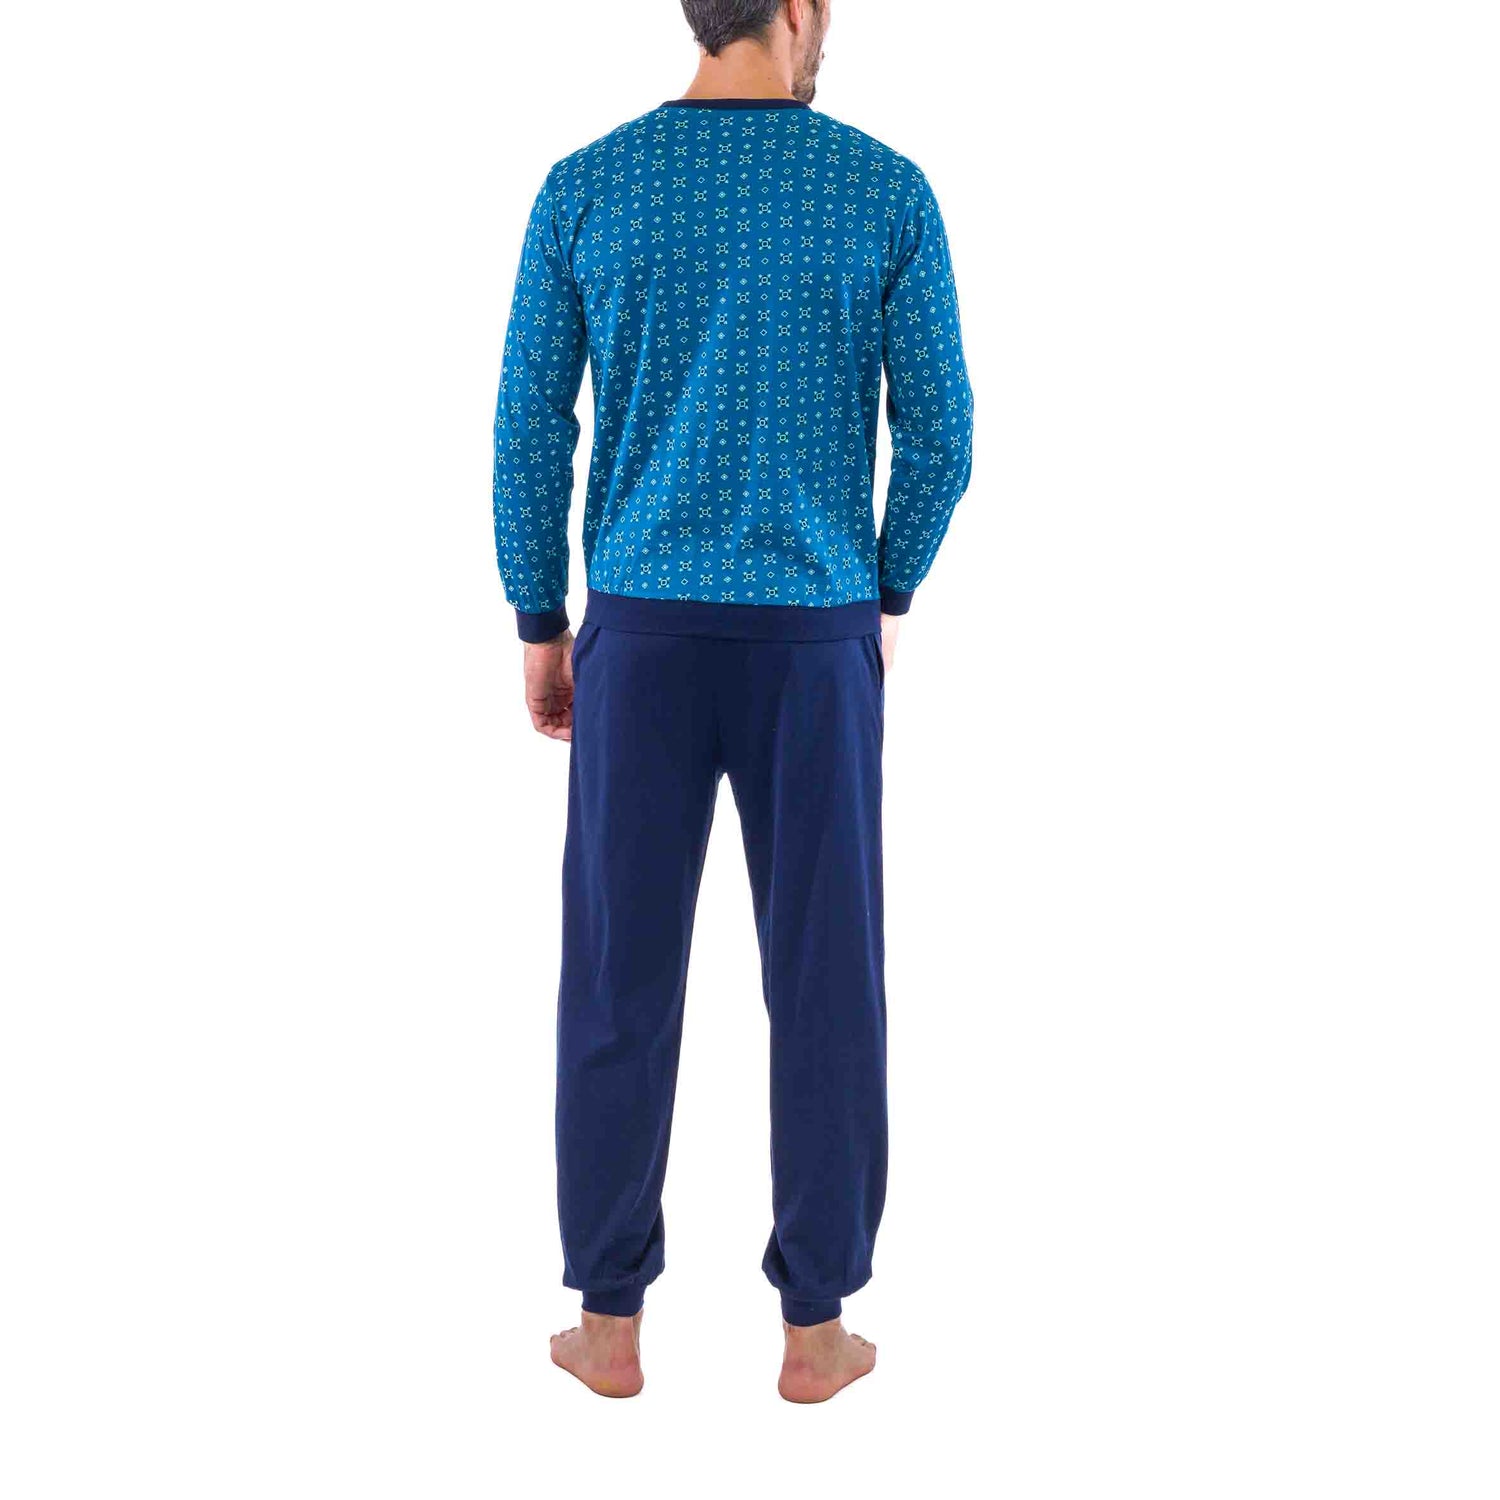 Pyjama forme Jogging en Jersey de Coton Mercerisé Imprimé Petits Motifs Bleu Pétrole